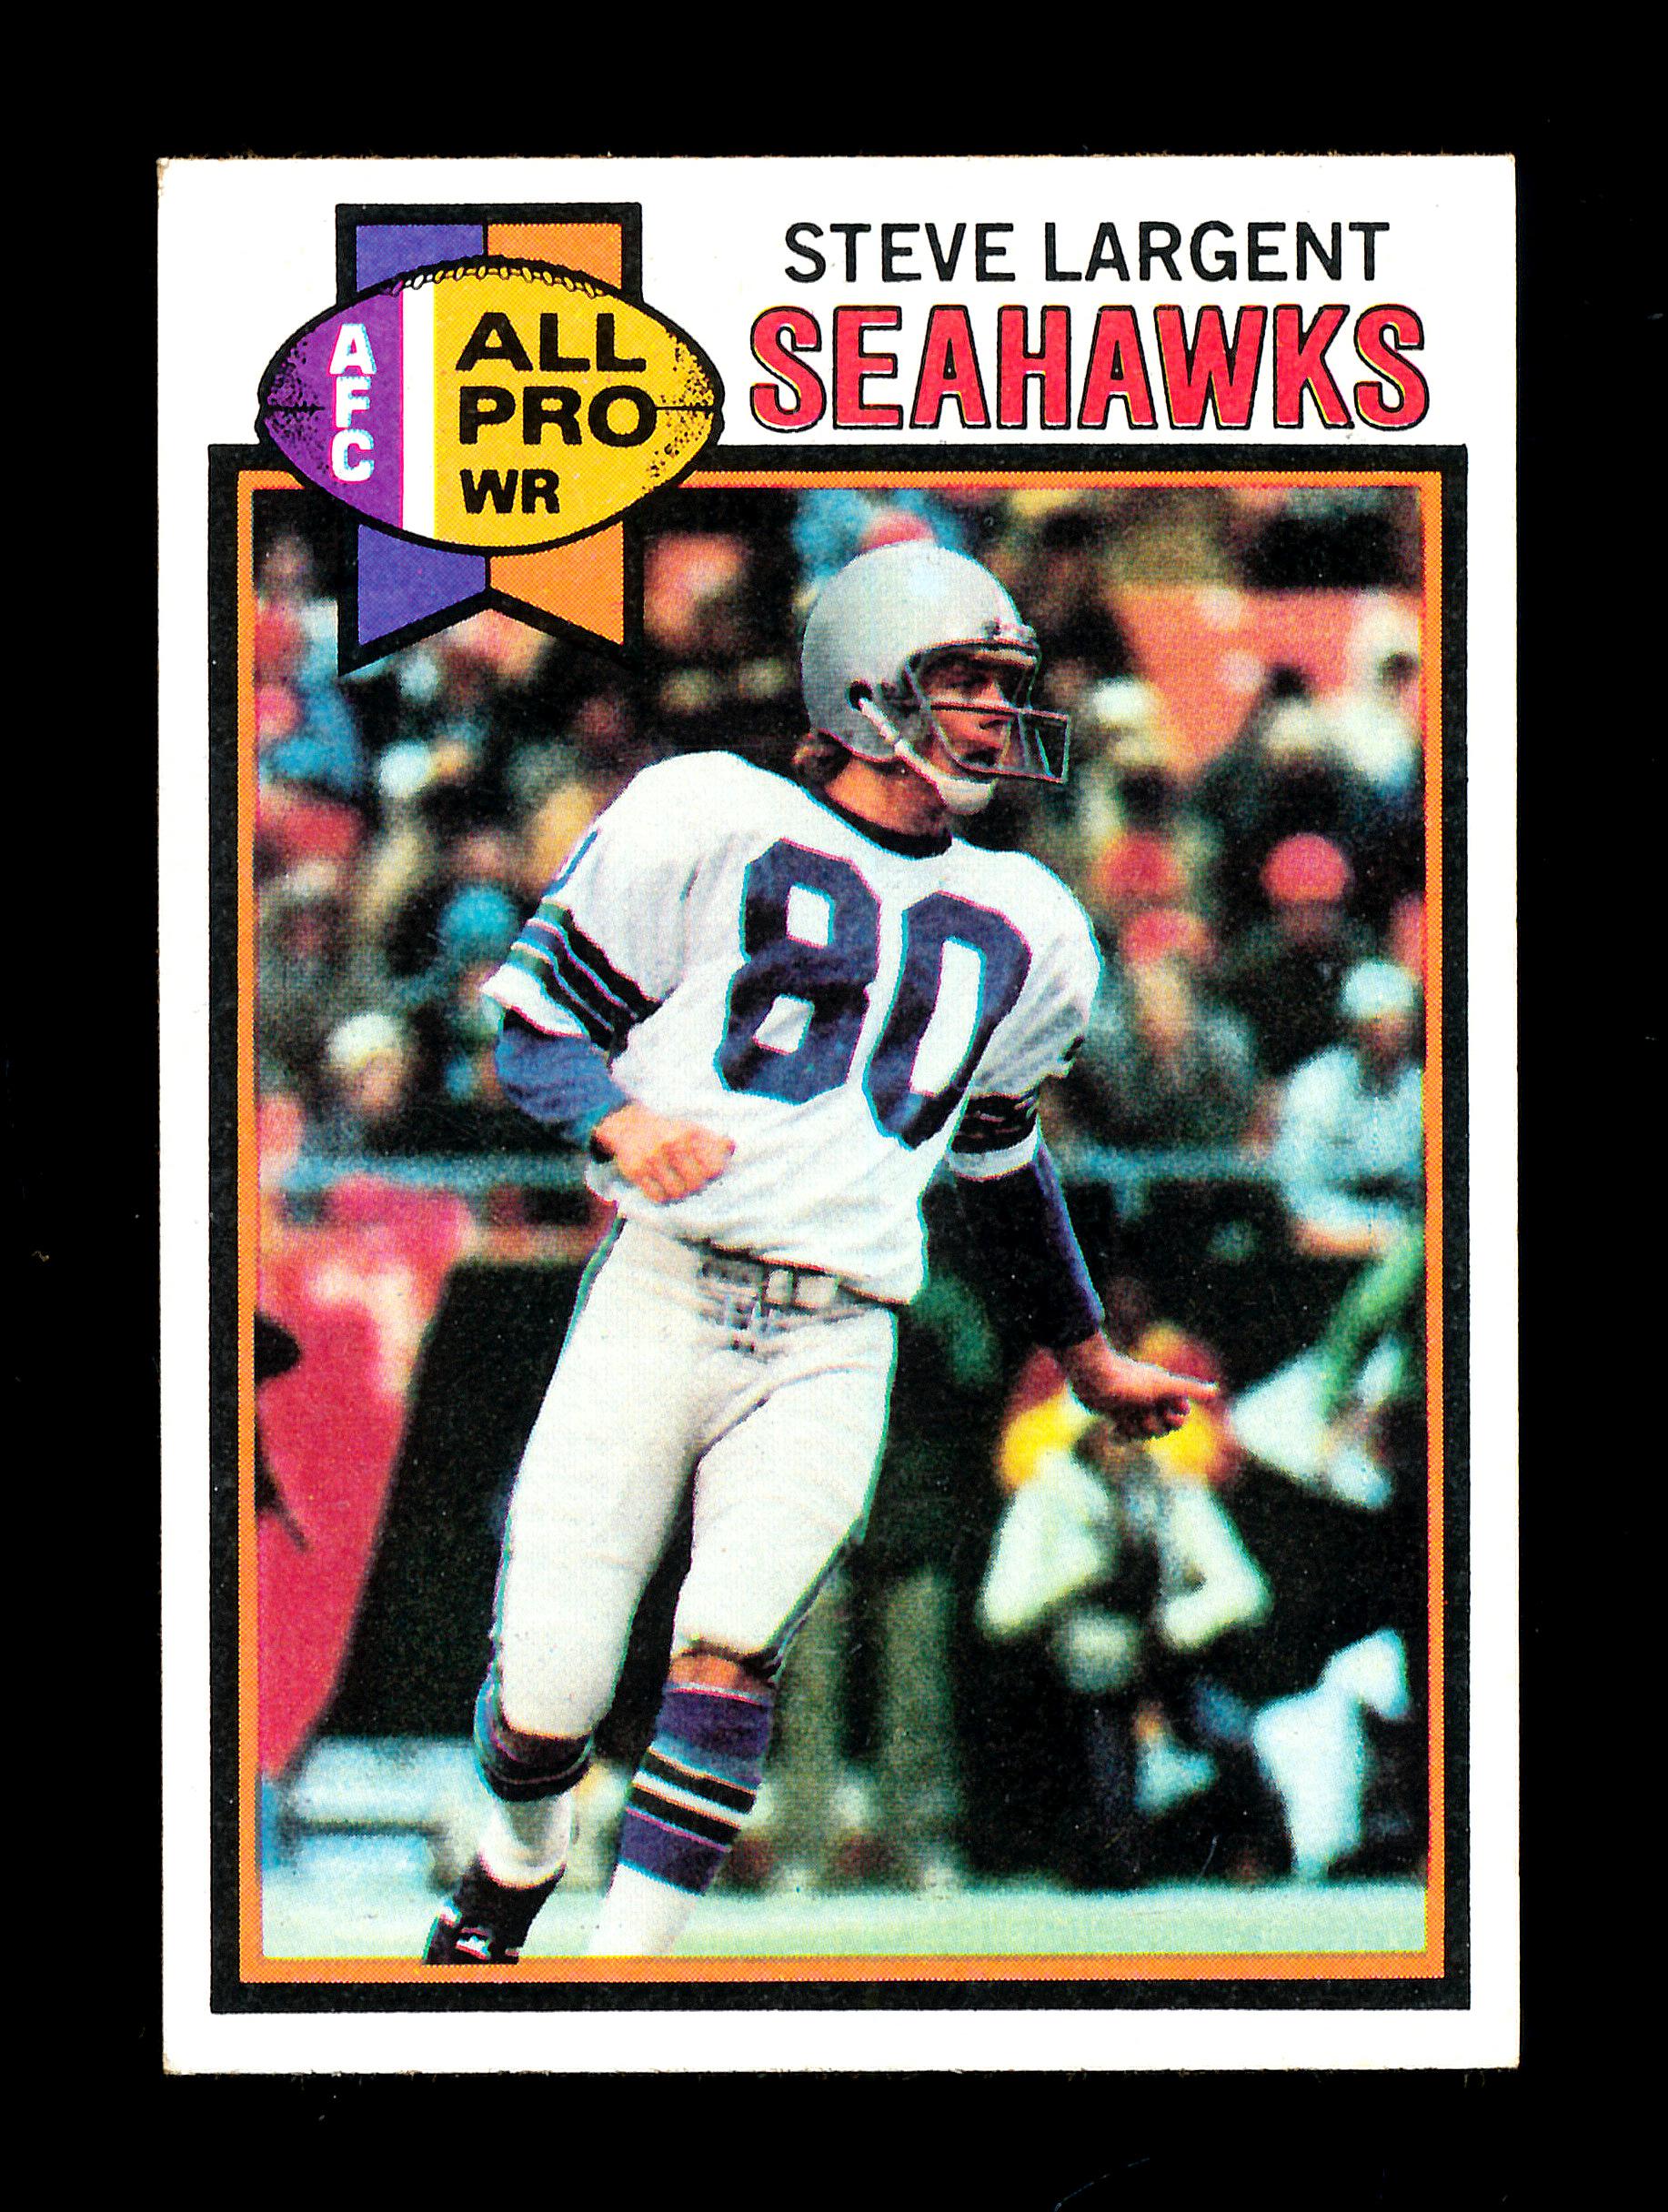 1979 Topps Football Card #198 Hall of Famer Steve Largent Seattle Seahawks.